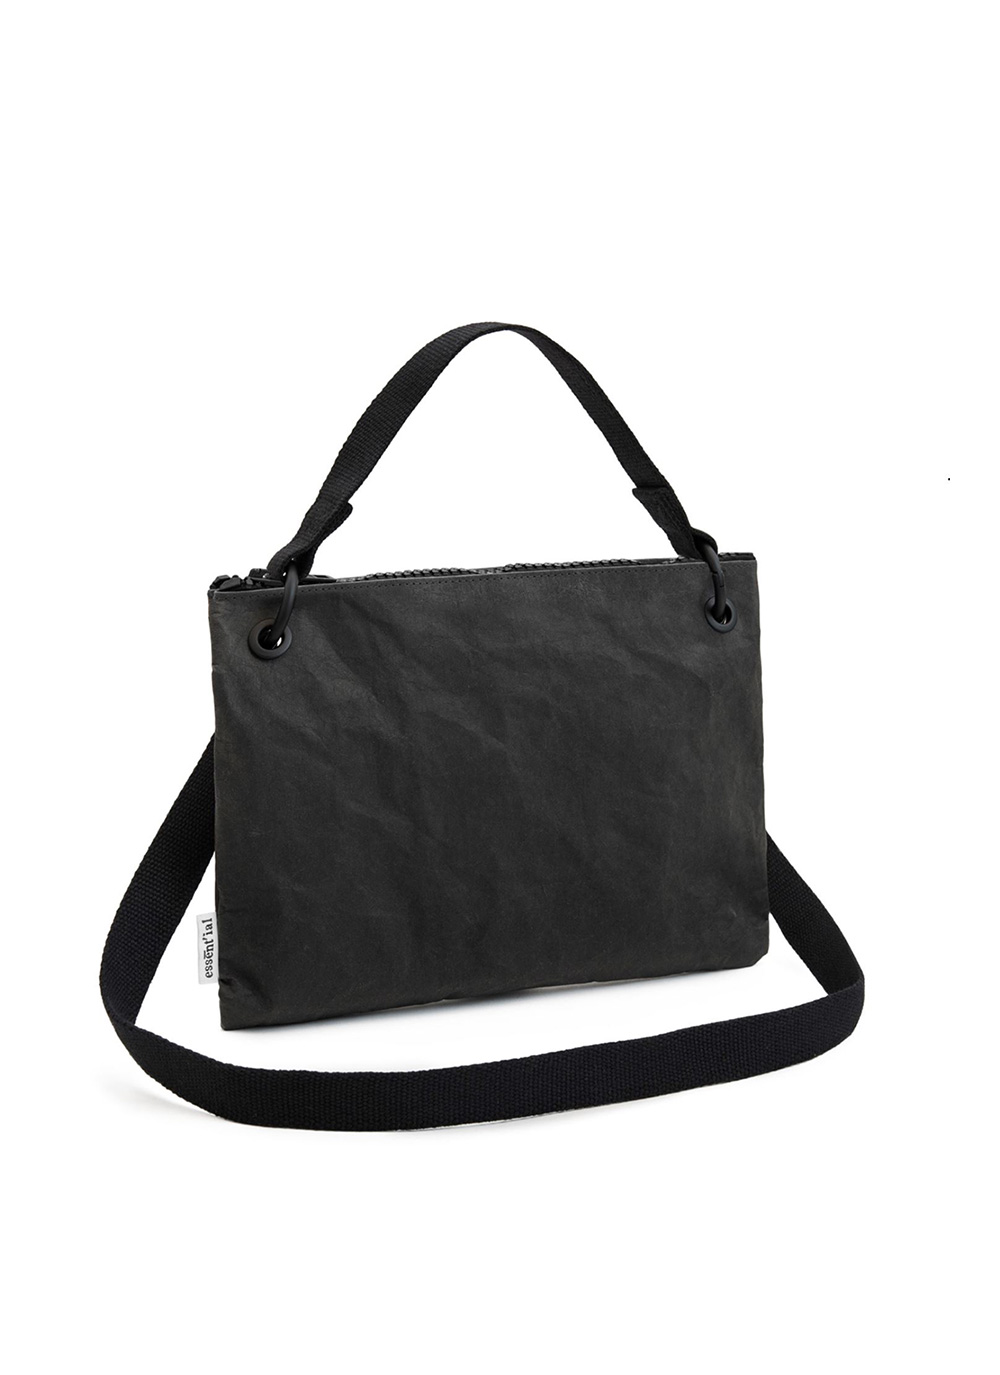 bag large black